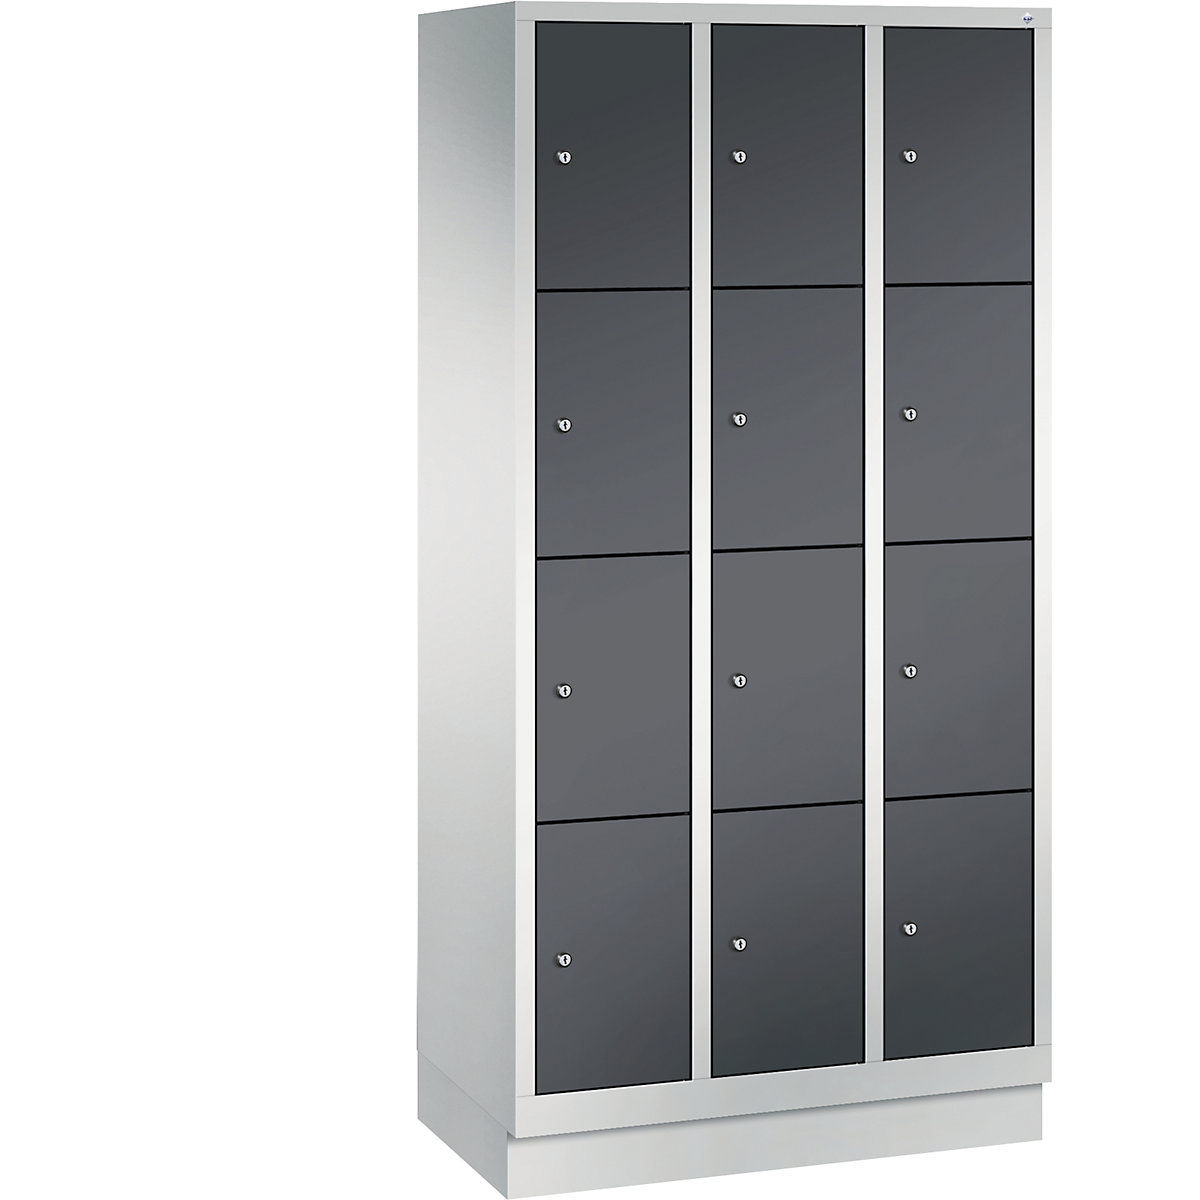 CLASSIC locker unit with plinth – C+P, 3 compartments, 4 shelf compartments each, compartment width 300 mm, light grey / black grey-4